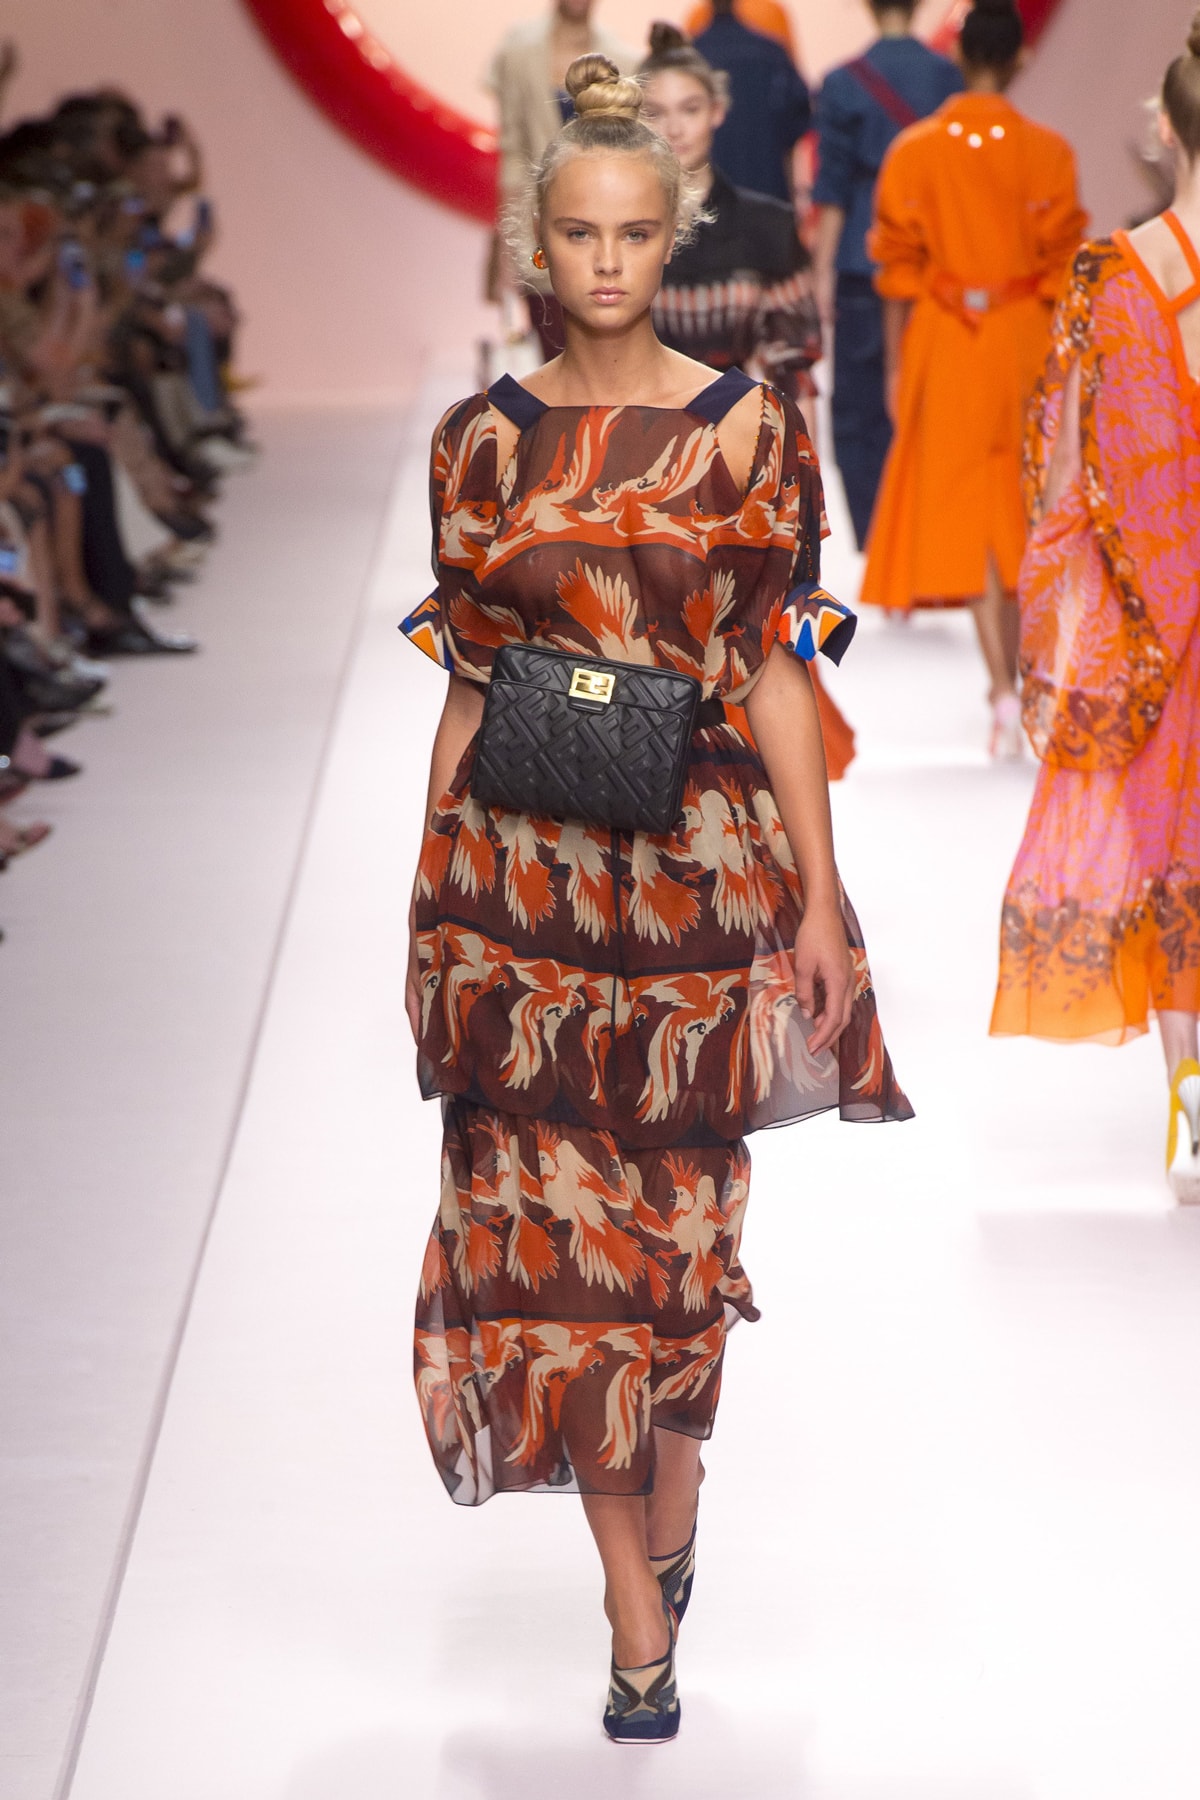 Fendi Karl Lagerfeld Spring Summer 2019 Milan Fashion Week Show Collection Top Skirt Orange Brown Belt Bag Black